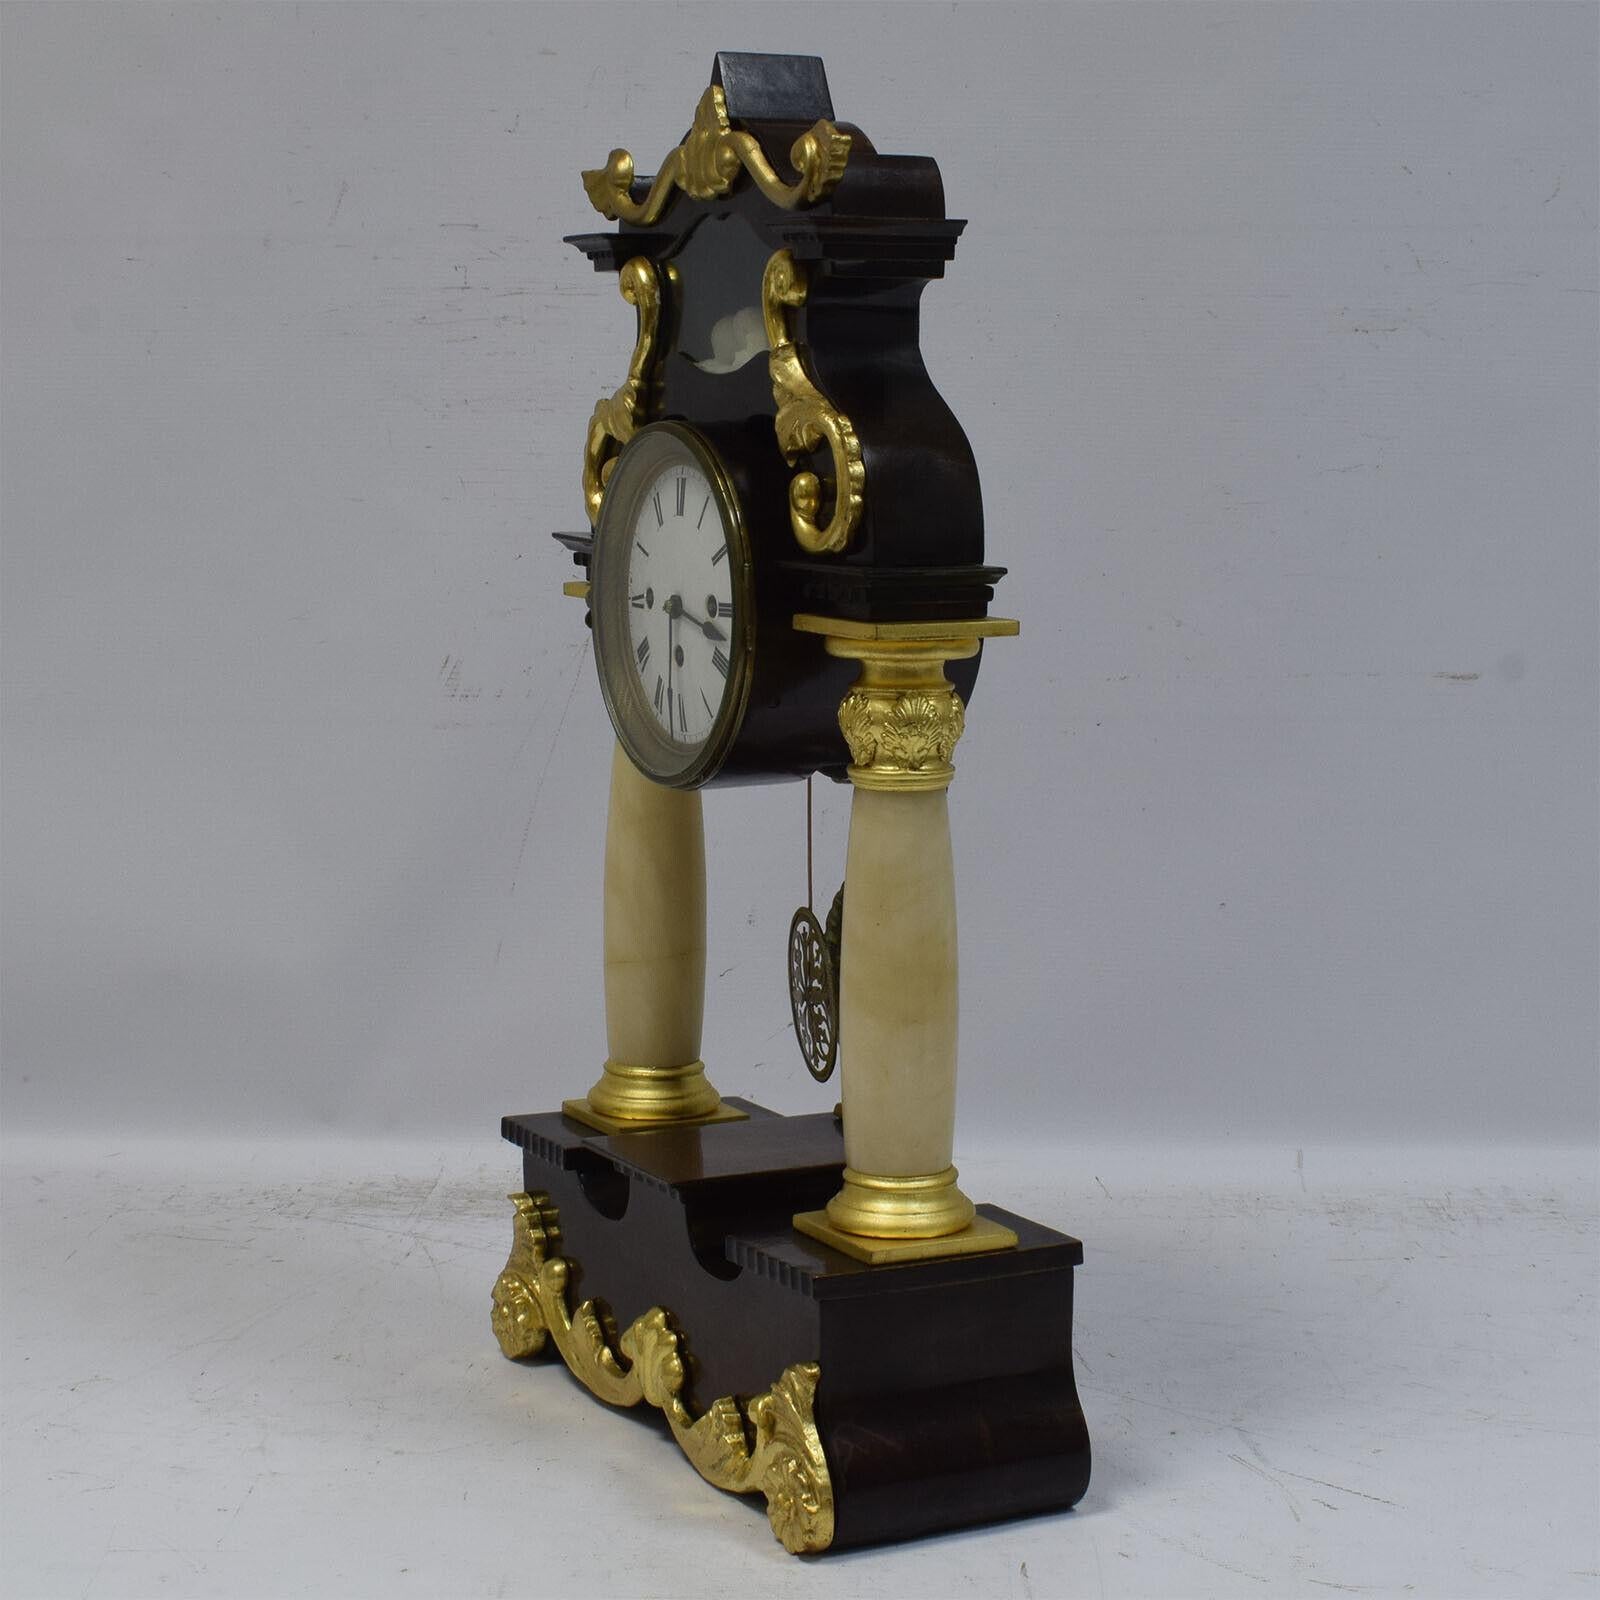 Voici cette exquise horloge à colonne fonctionnelle du XIXe siècle, véritable témoignage de l'élégance de l'époque. D'une hauteur de 61 cm, cette horloge de cheminée ancienne présente un portique soutenu par deux colonnes d'albâtre blanc, créant